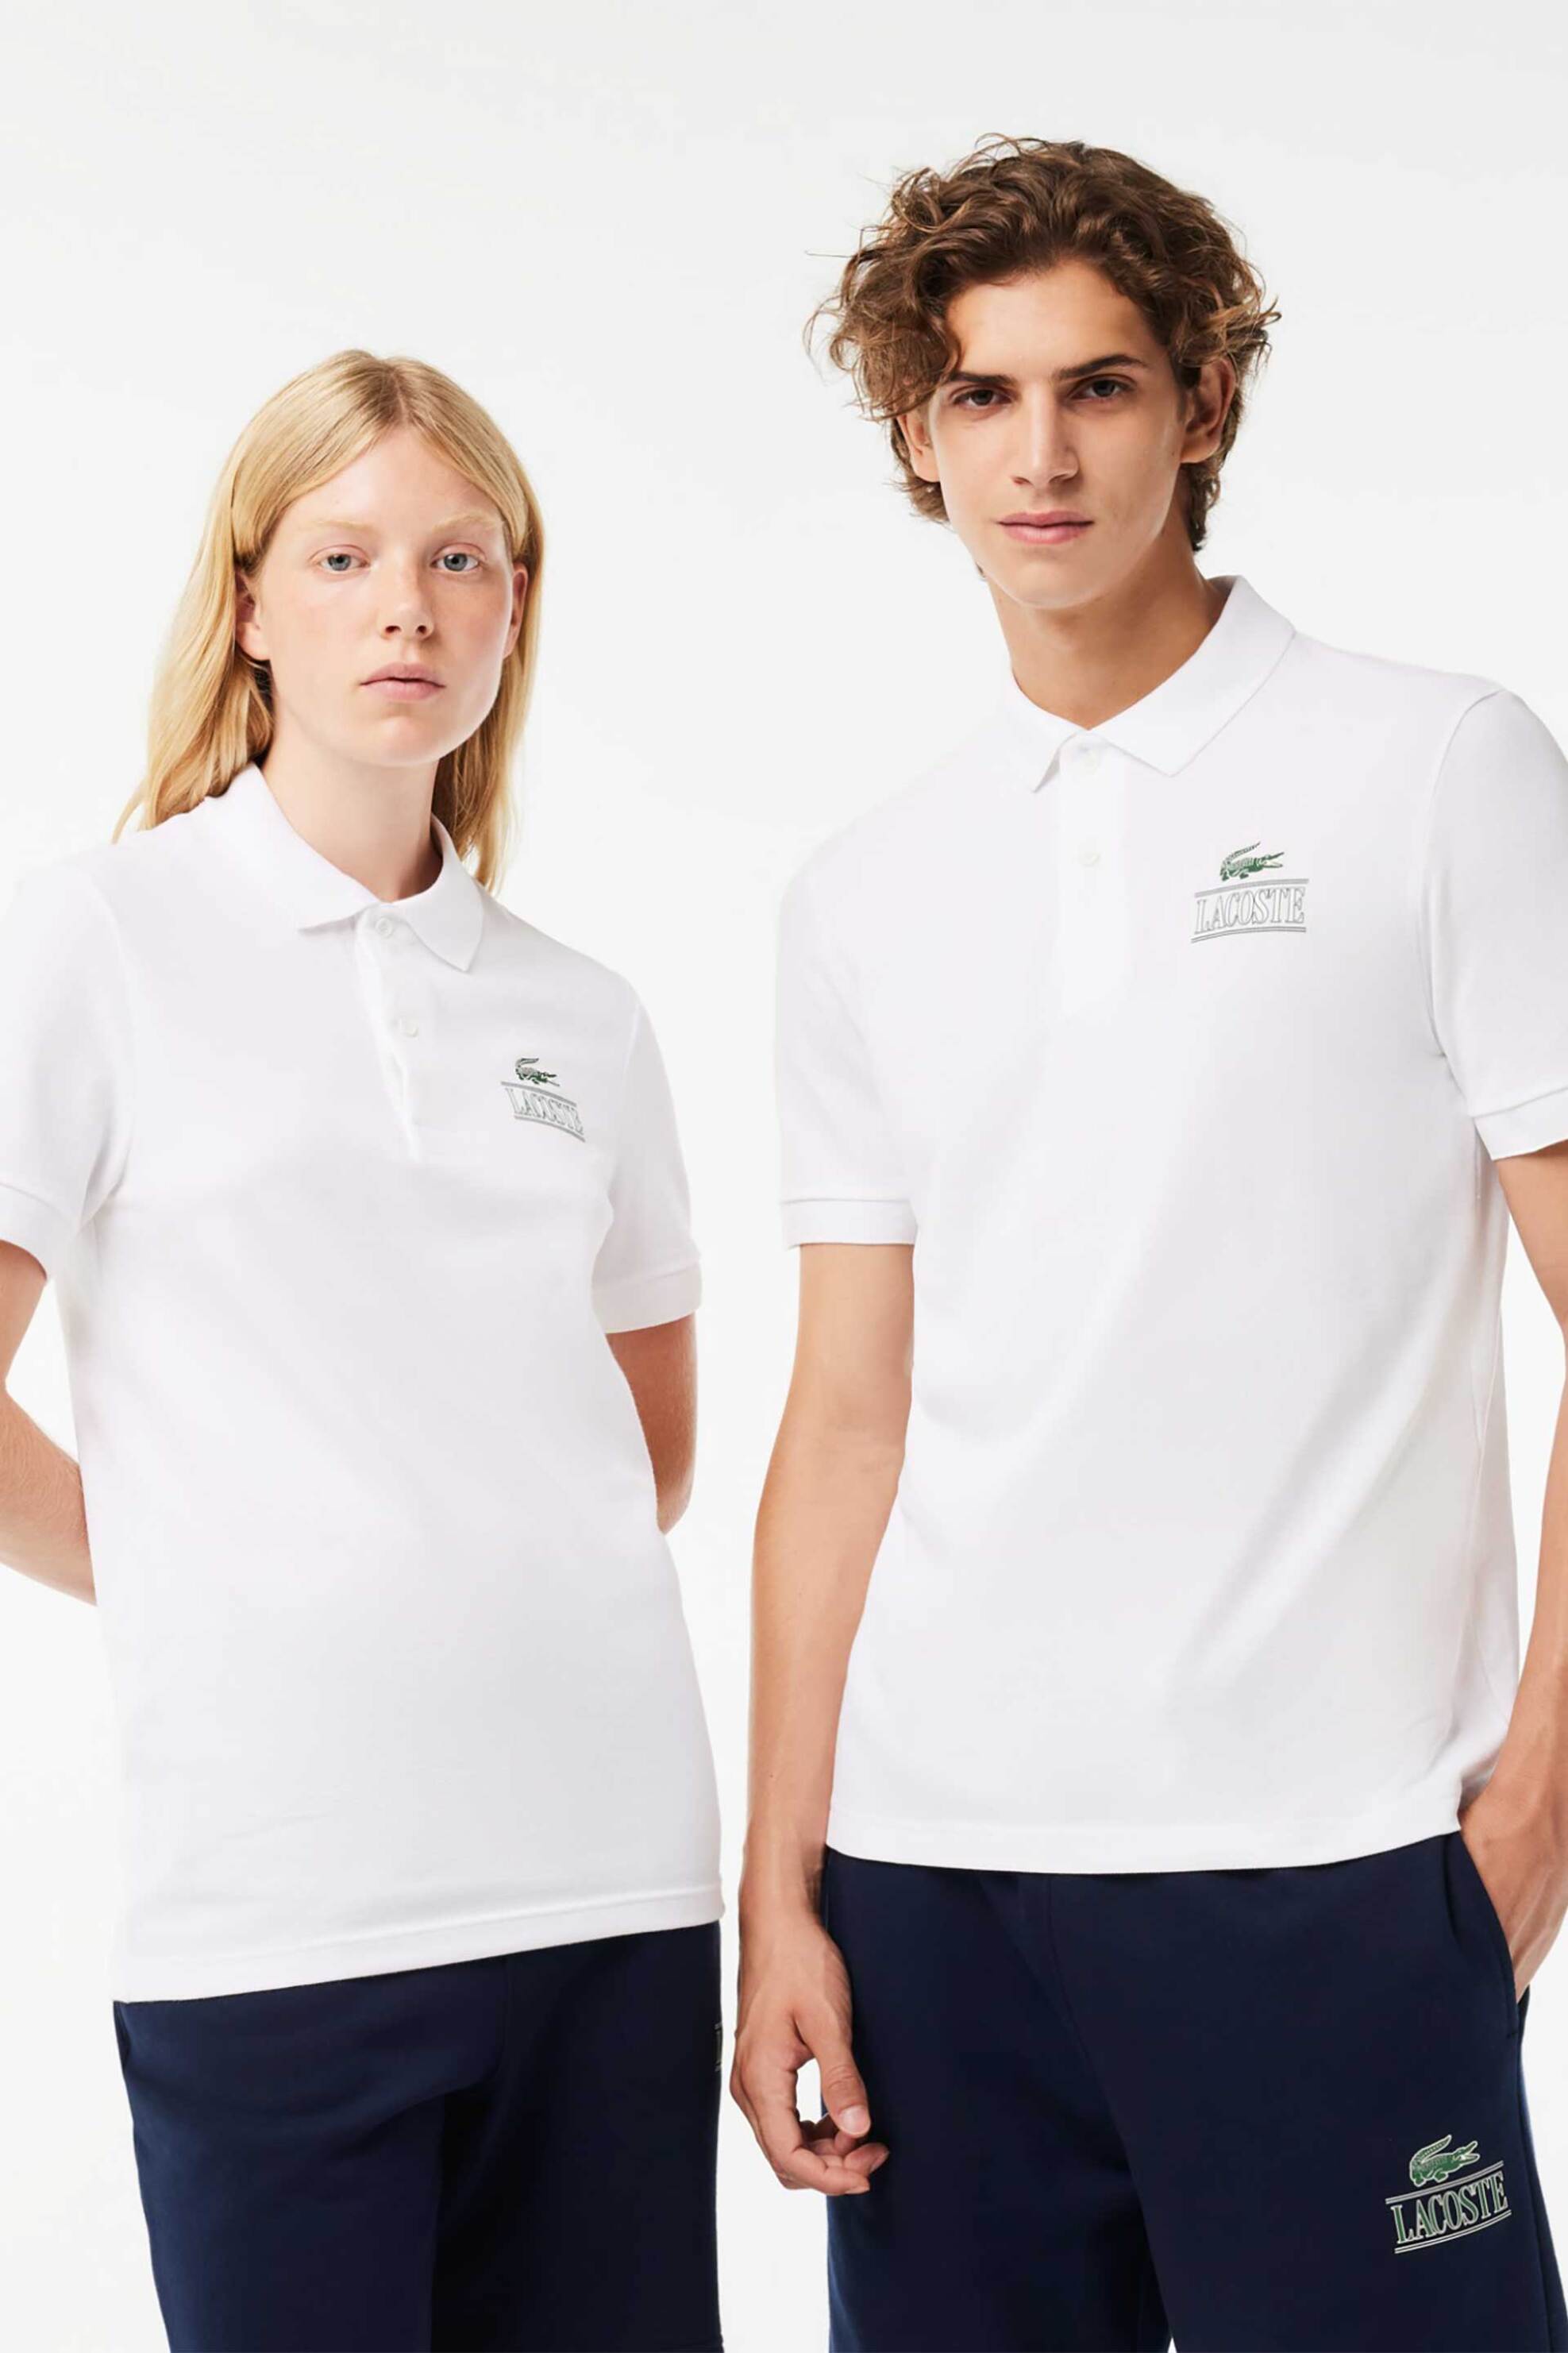 Ανδρική Μόδα > Ανδρικά Ρούχα > Ανδρικές Μπλούζες > Ανδρικές Μπλούζες Πολο Lacoste unisex πόλο μπλούζα πικέ μονόχρωμη με signature print Regular Fit - PH1136 Λευκό